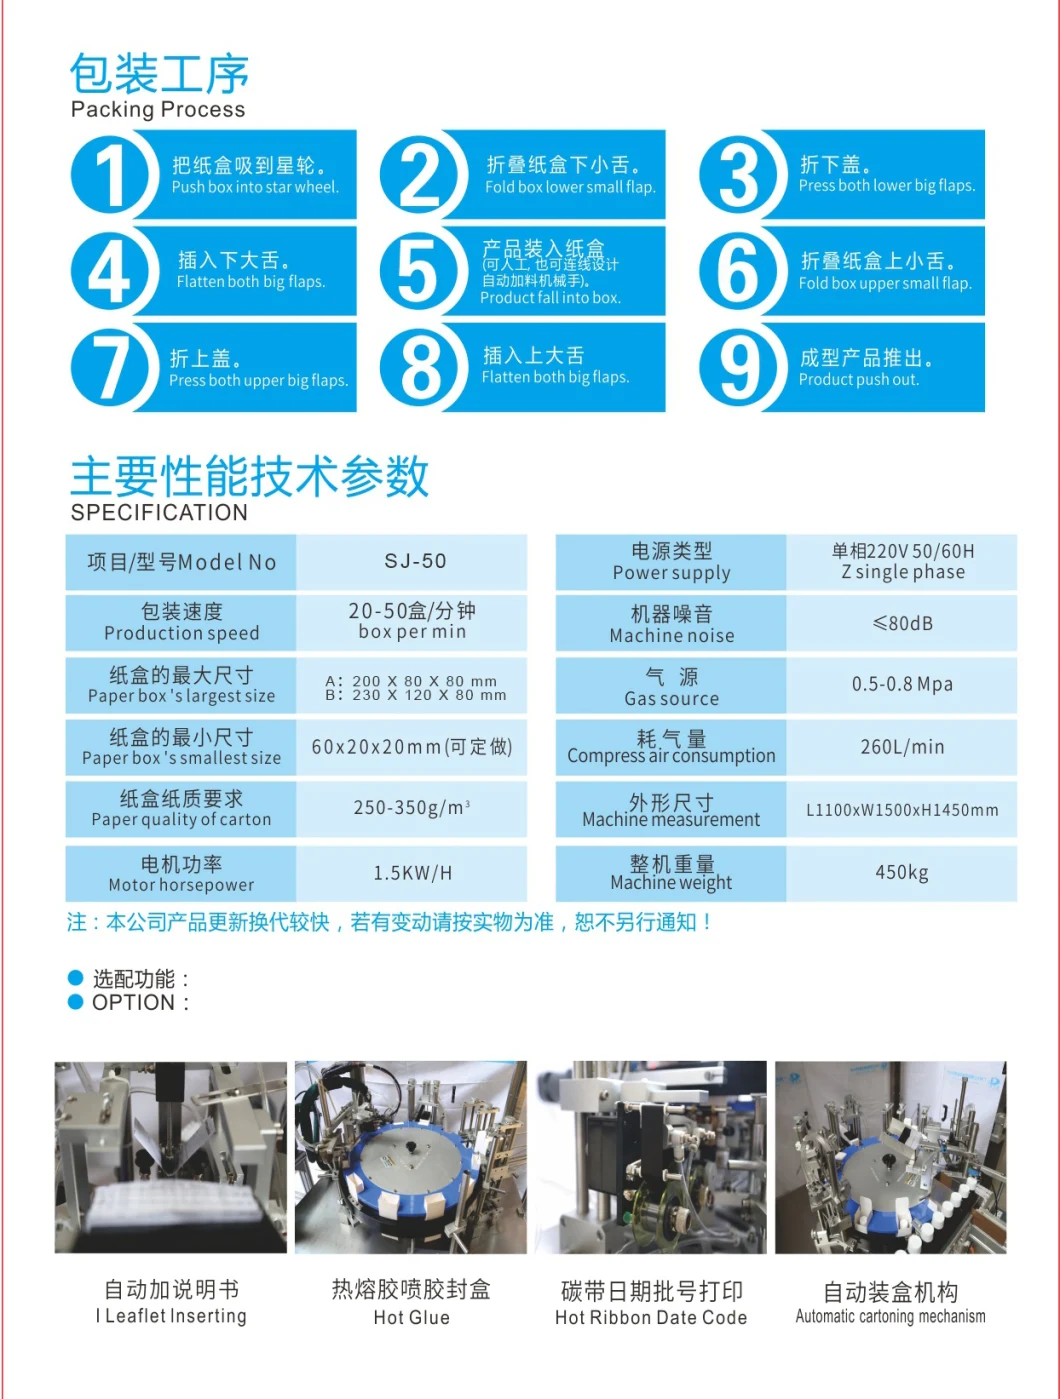 PLC Control Semiautomatic Box Filling Packing Machine, China Automatic Cartoning Machine Price